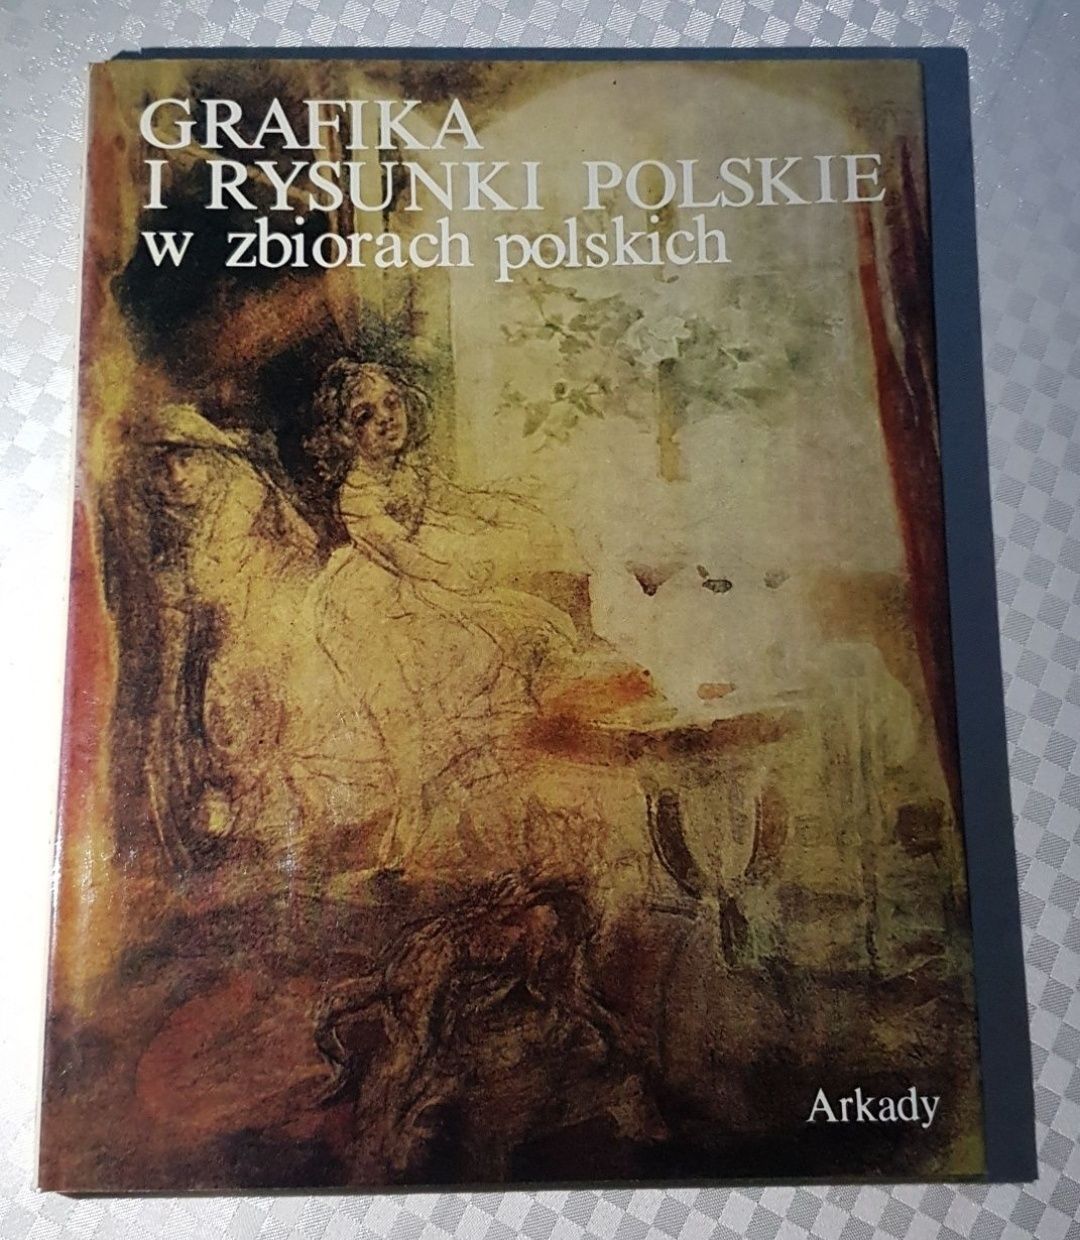 Albumy - grafika i rysunki / Wydawnictwo Arkady